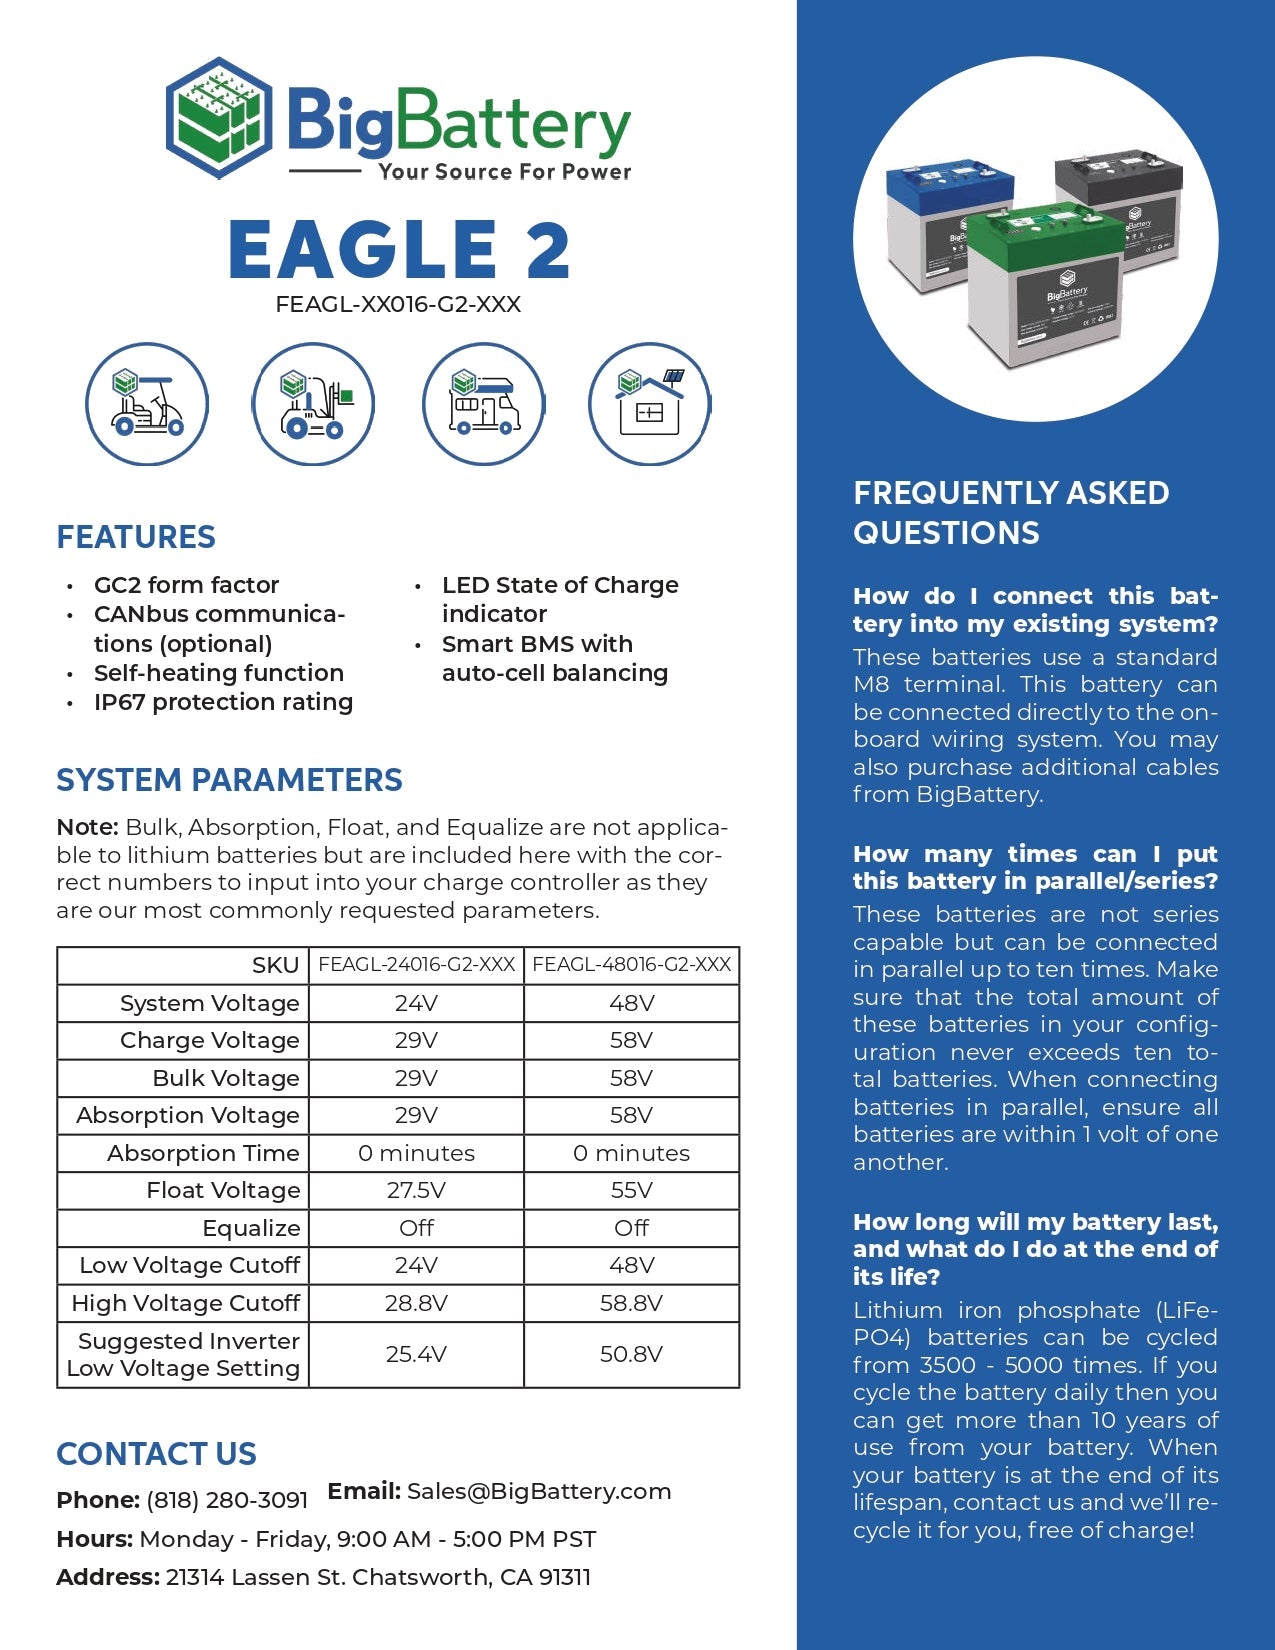 24V 2x EAGLE 2 Scissor Lift Kit